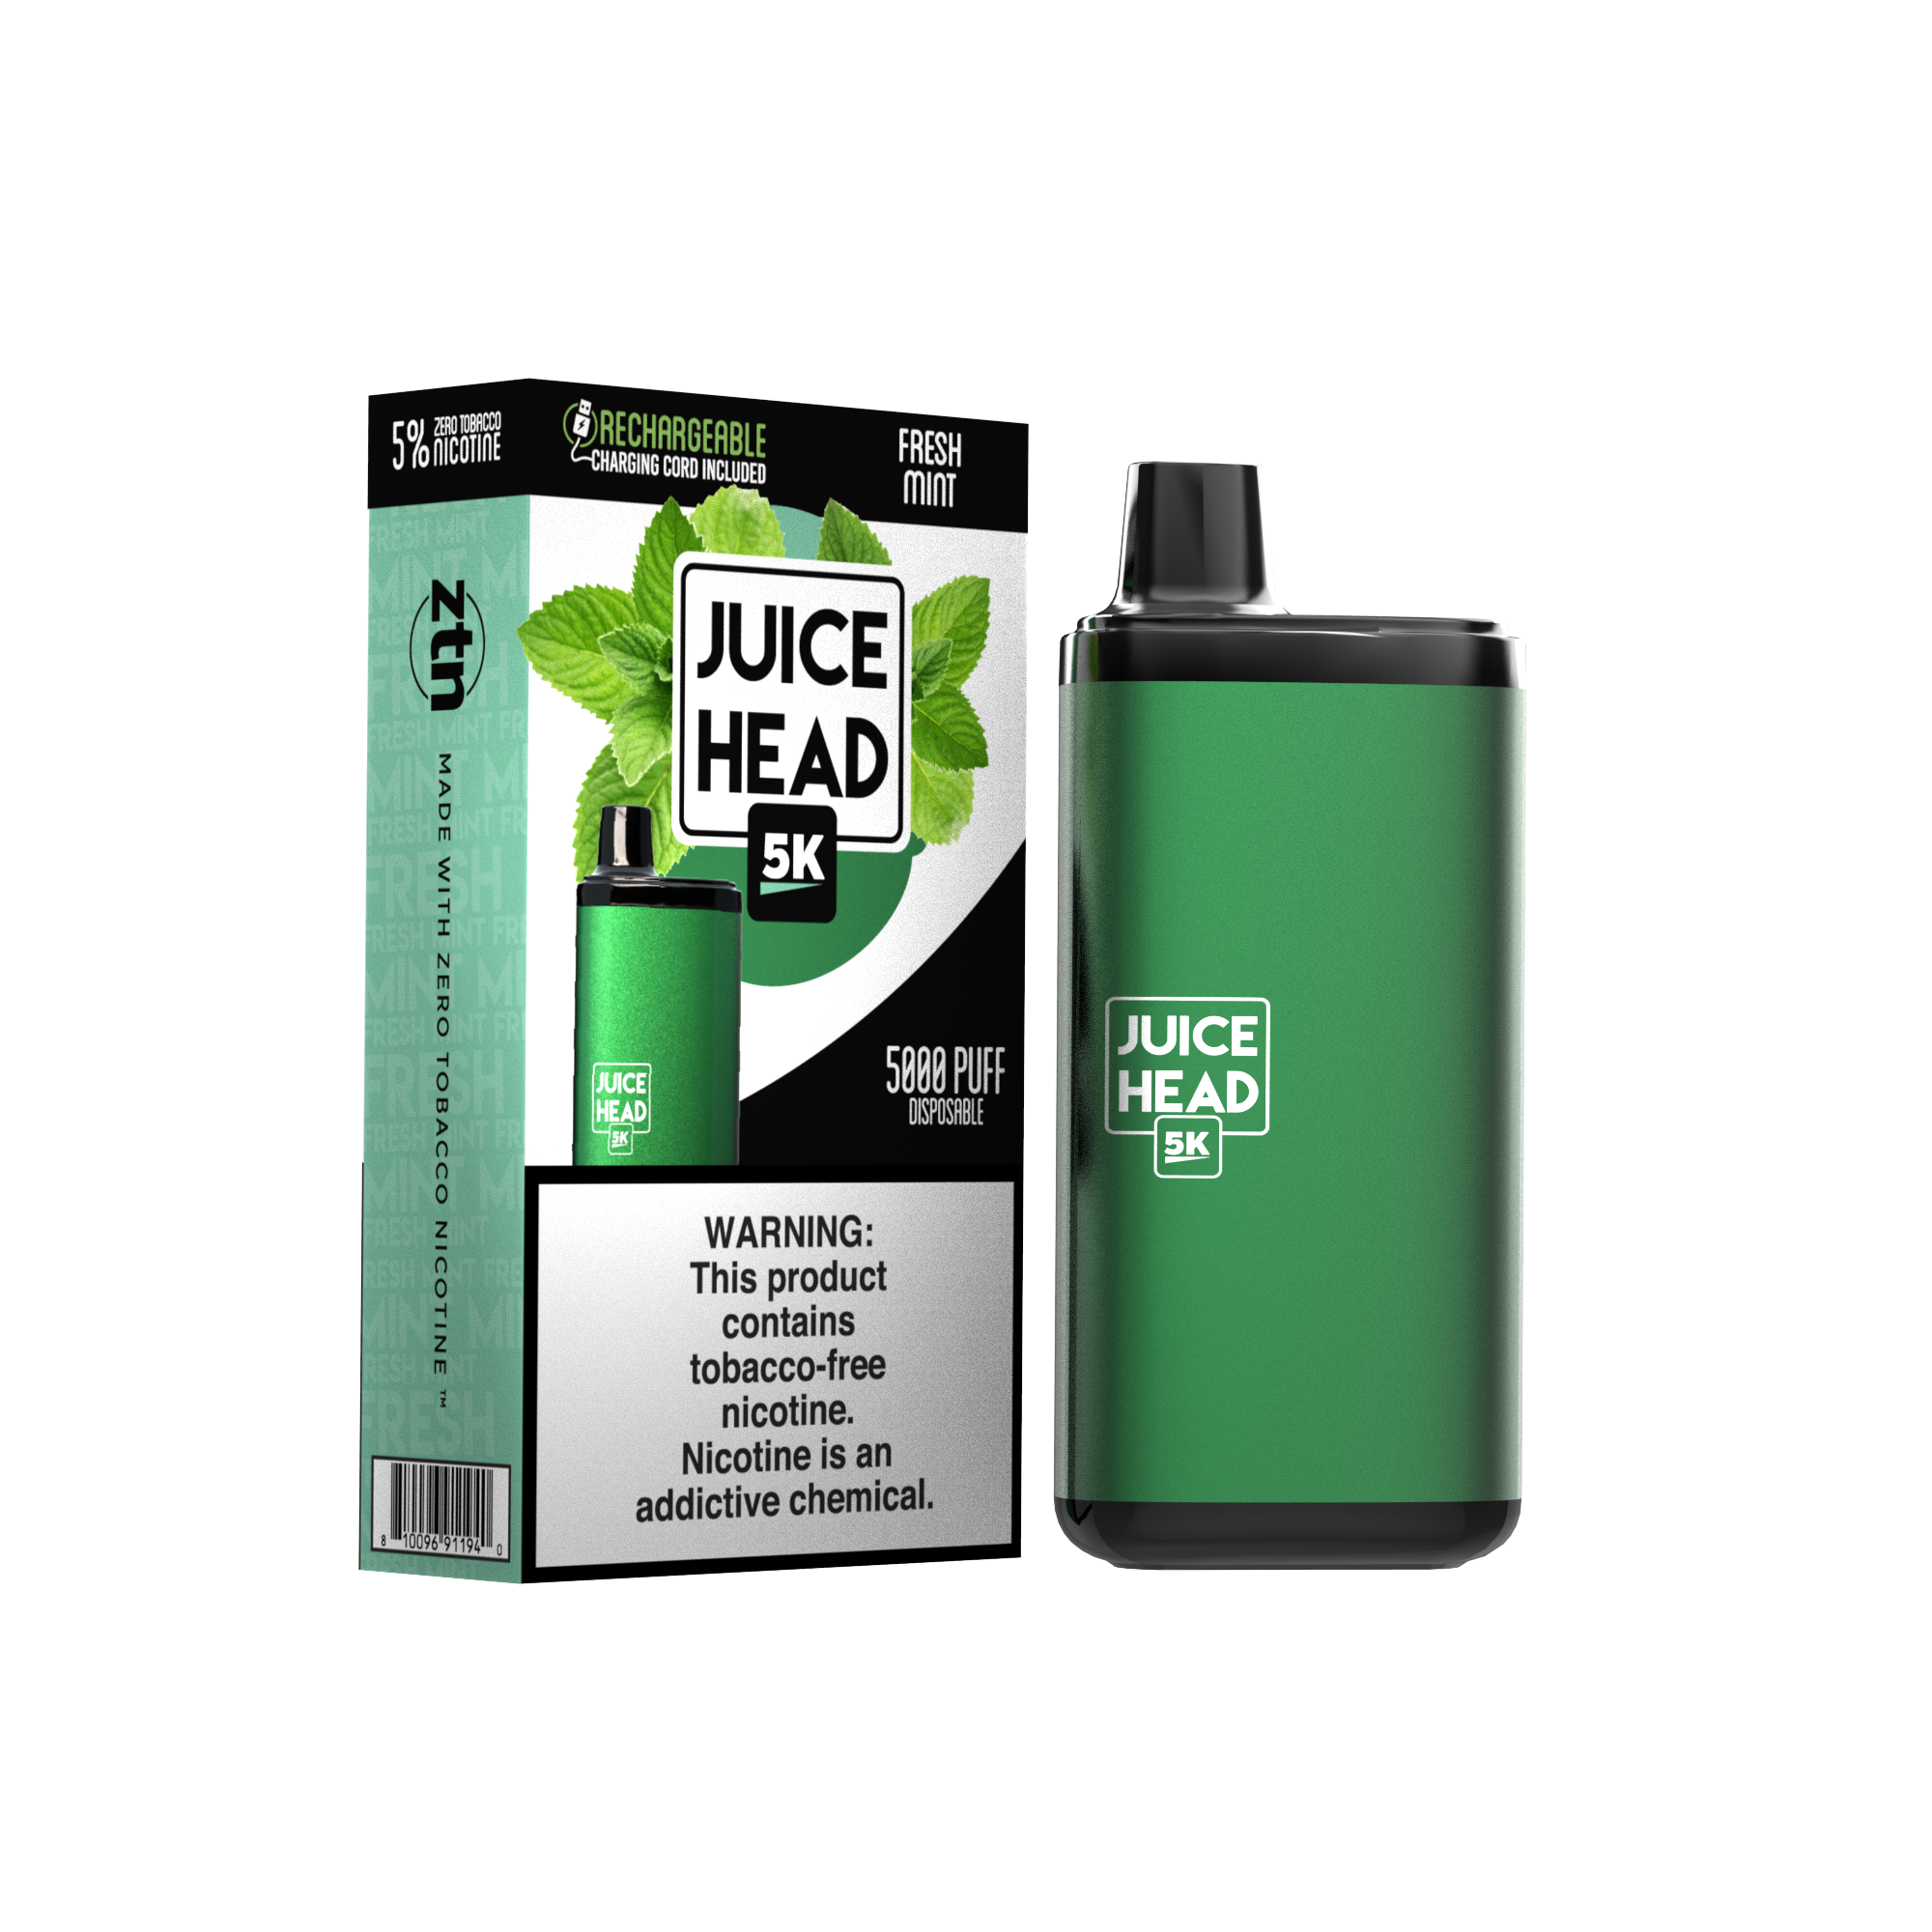 Juice Head 5K - FRESH MINT - E-Juice